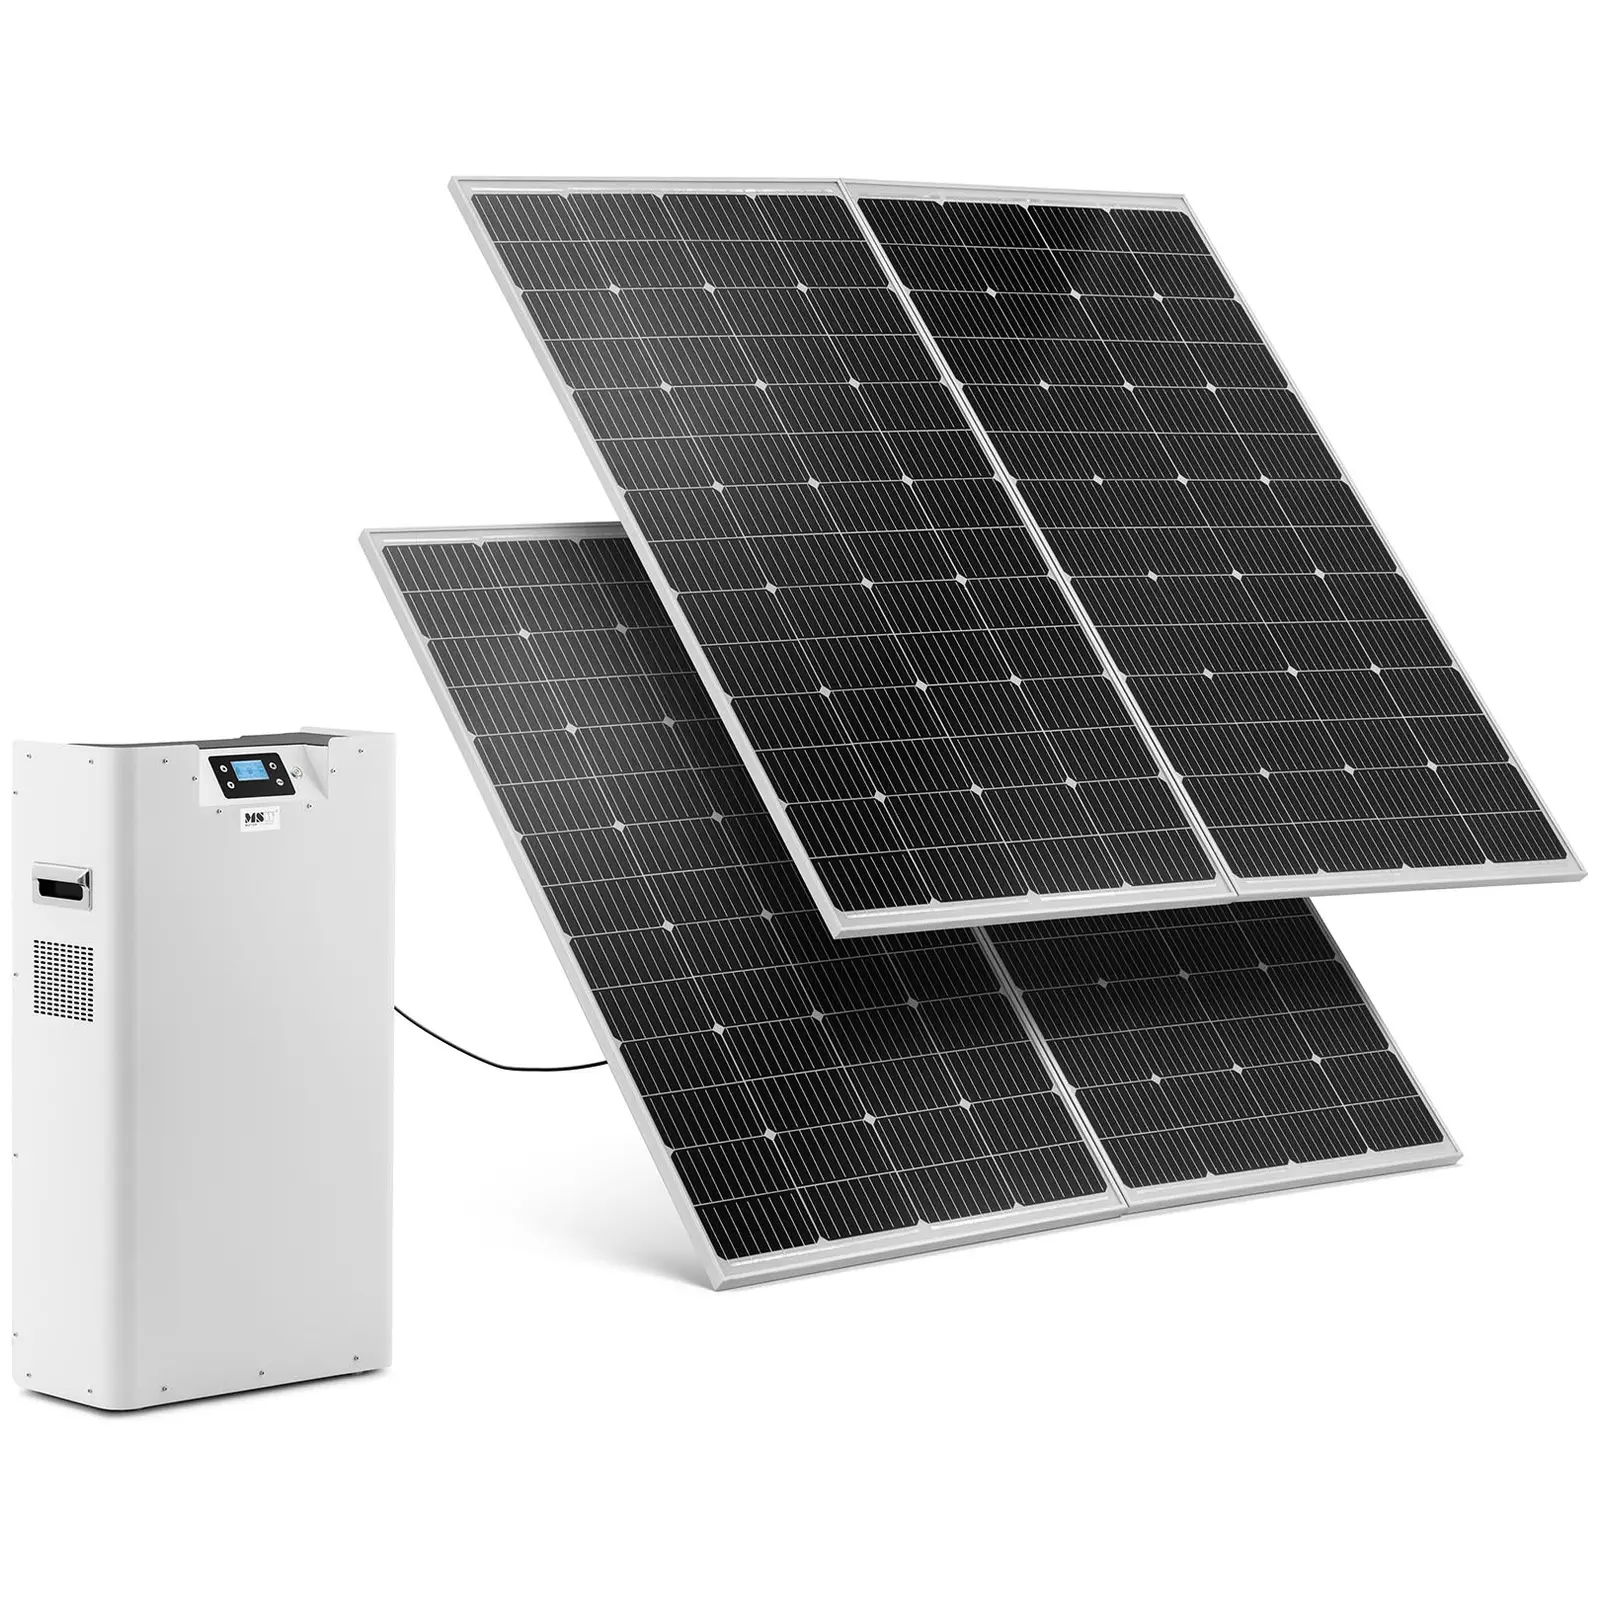 Sistema de energía solar con 2 paneles e inversor - 3000 W - 230 V